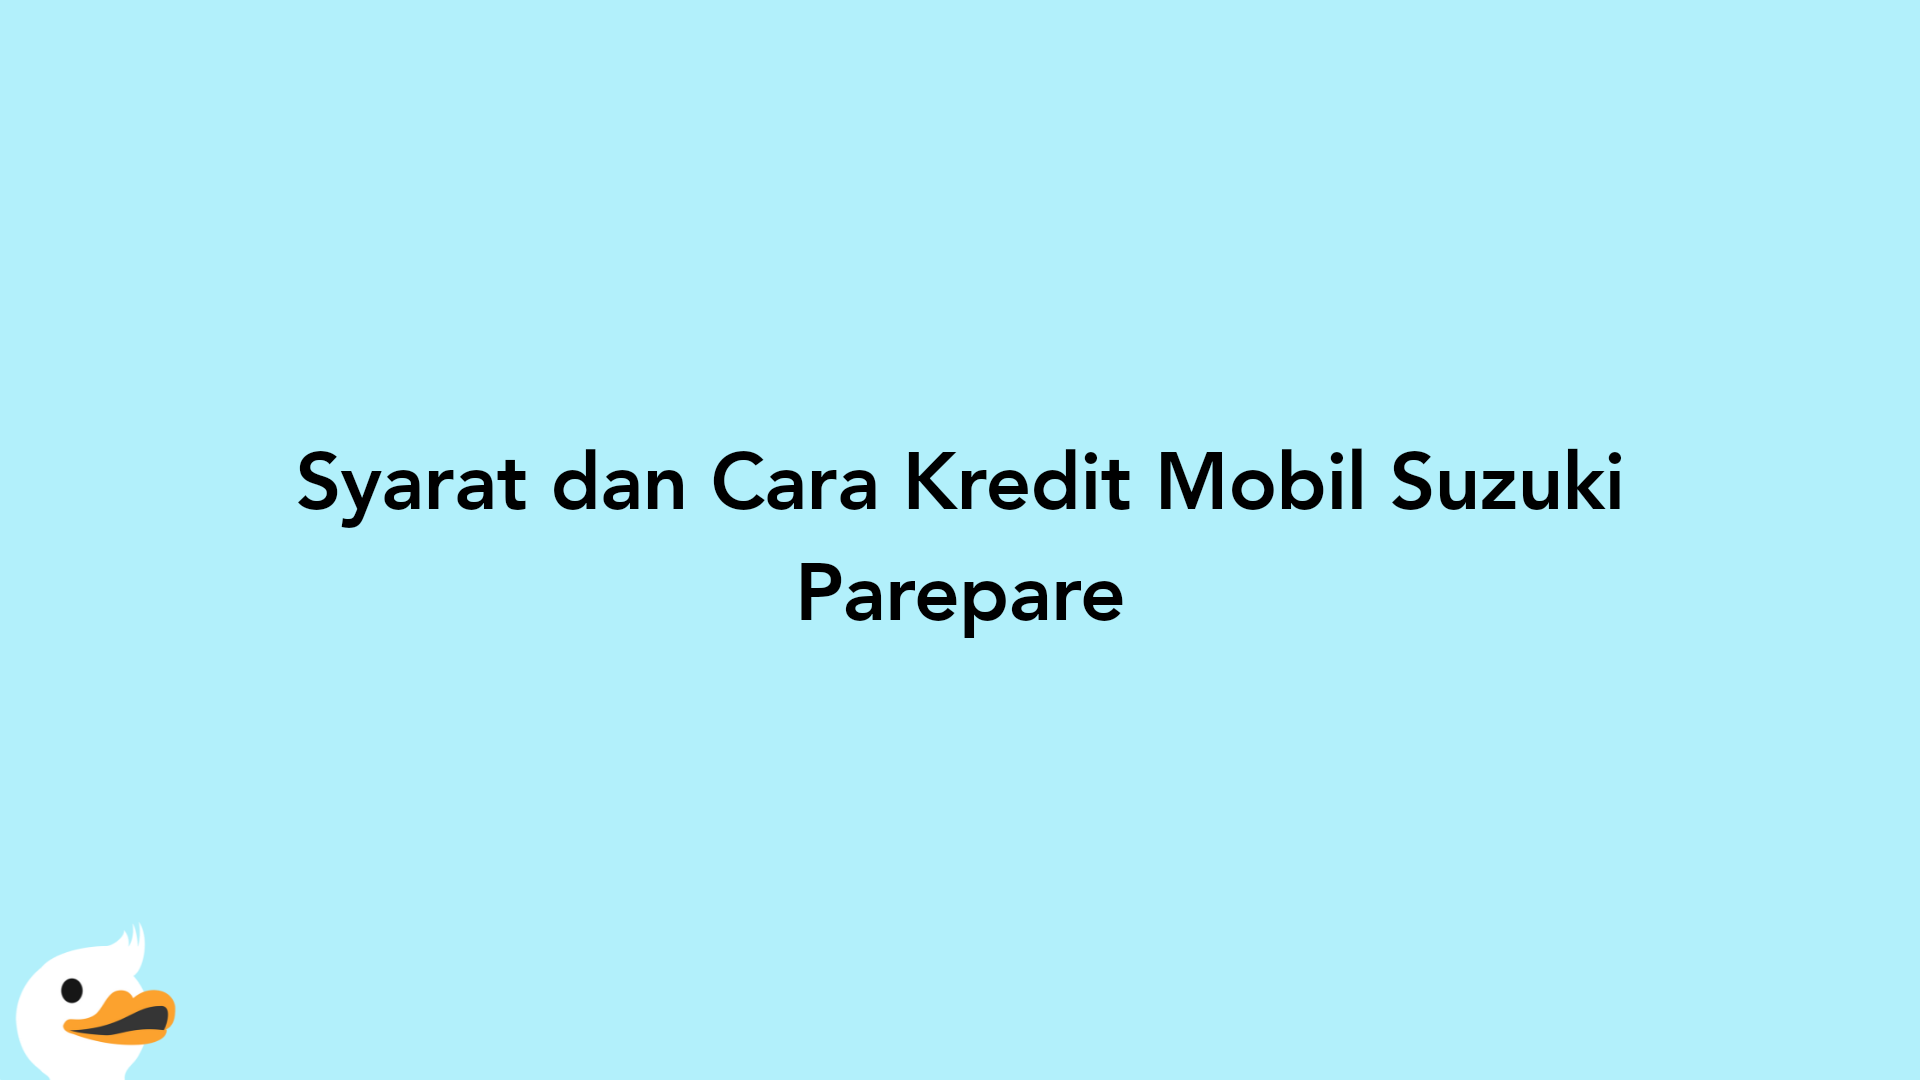 Syarat dan Cara Kredit Mobil Suzuki Parepare